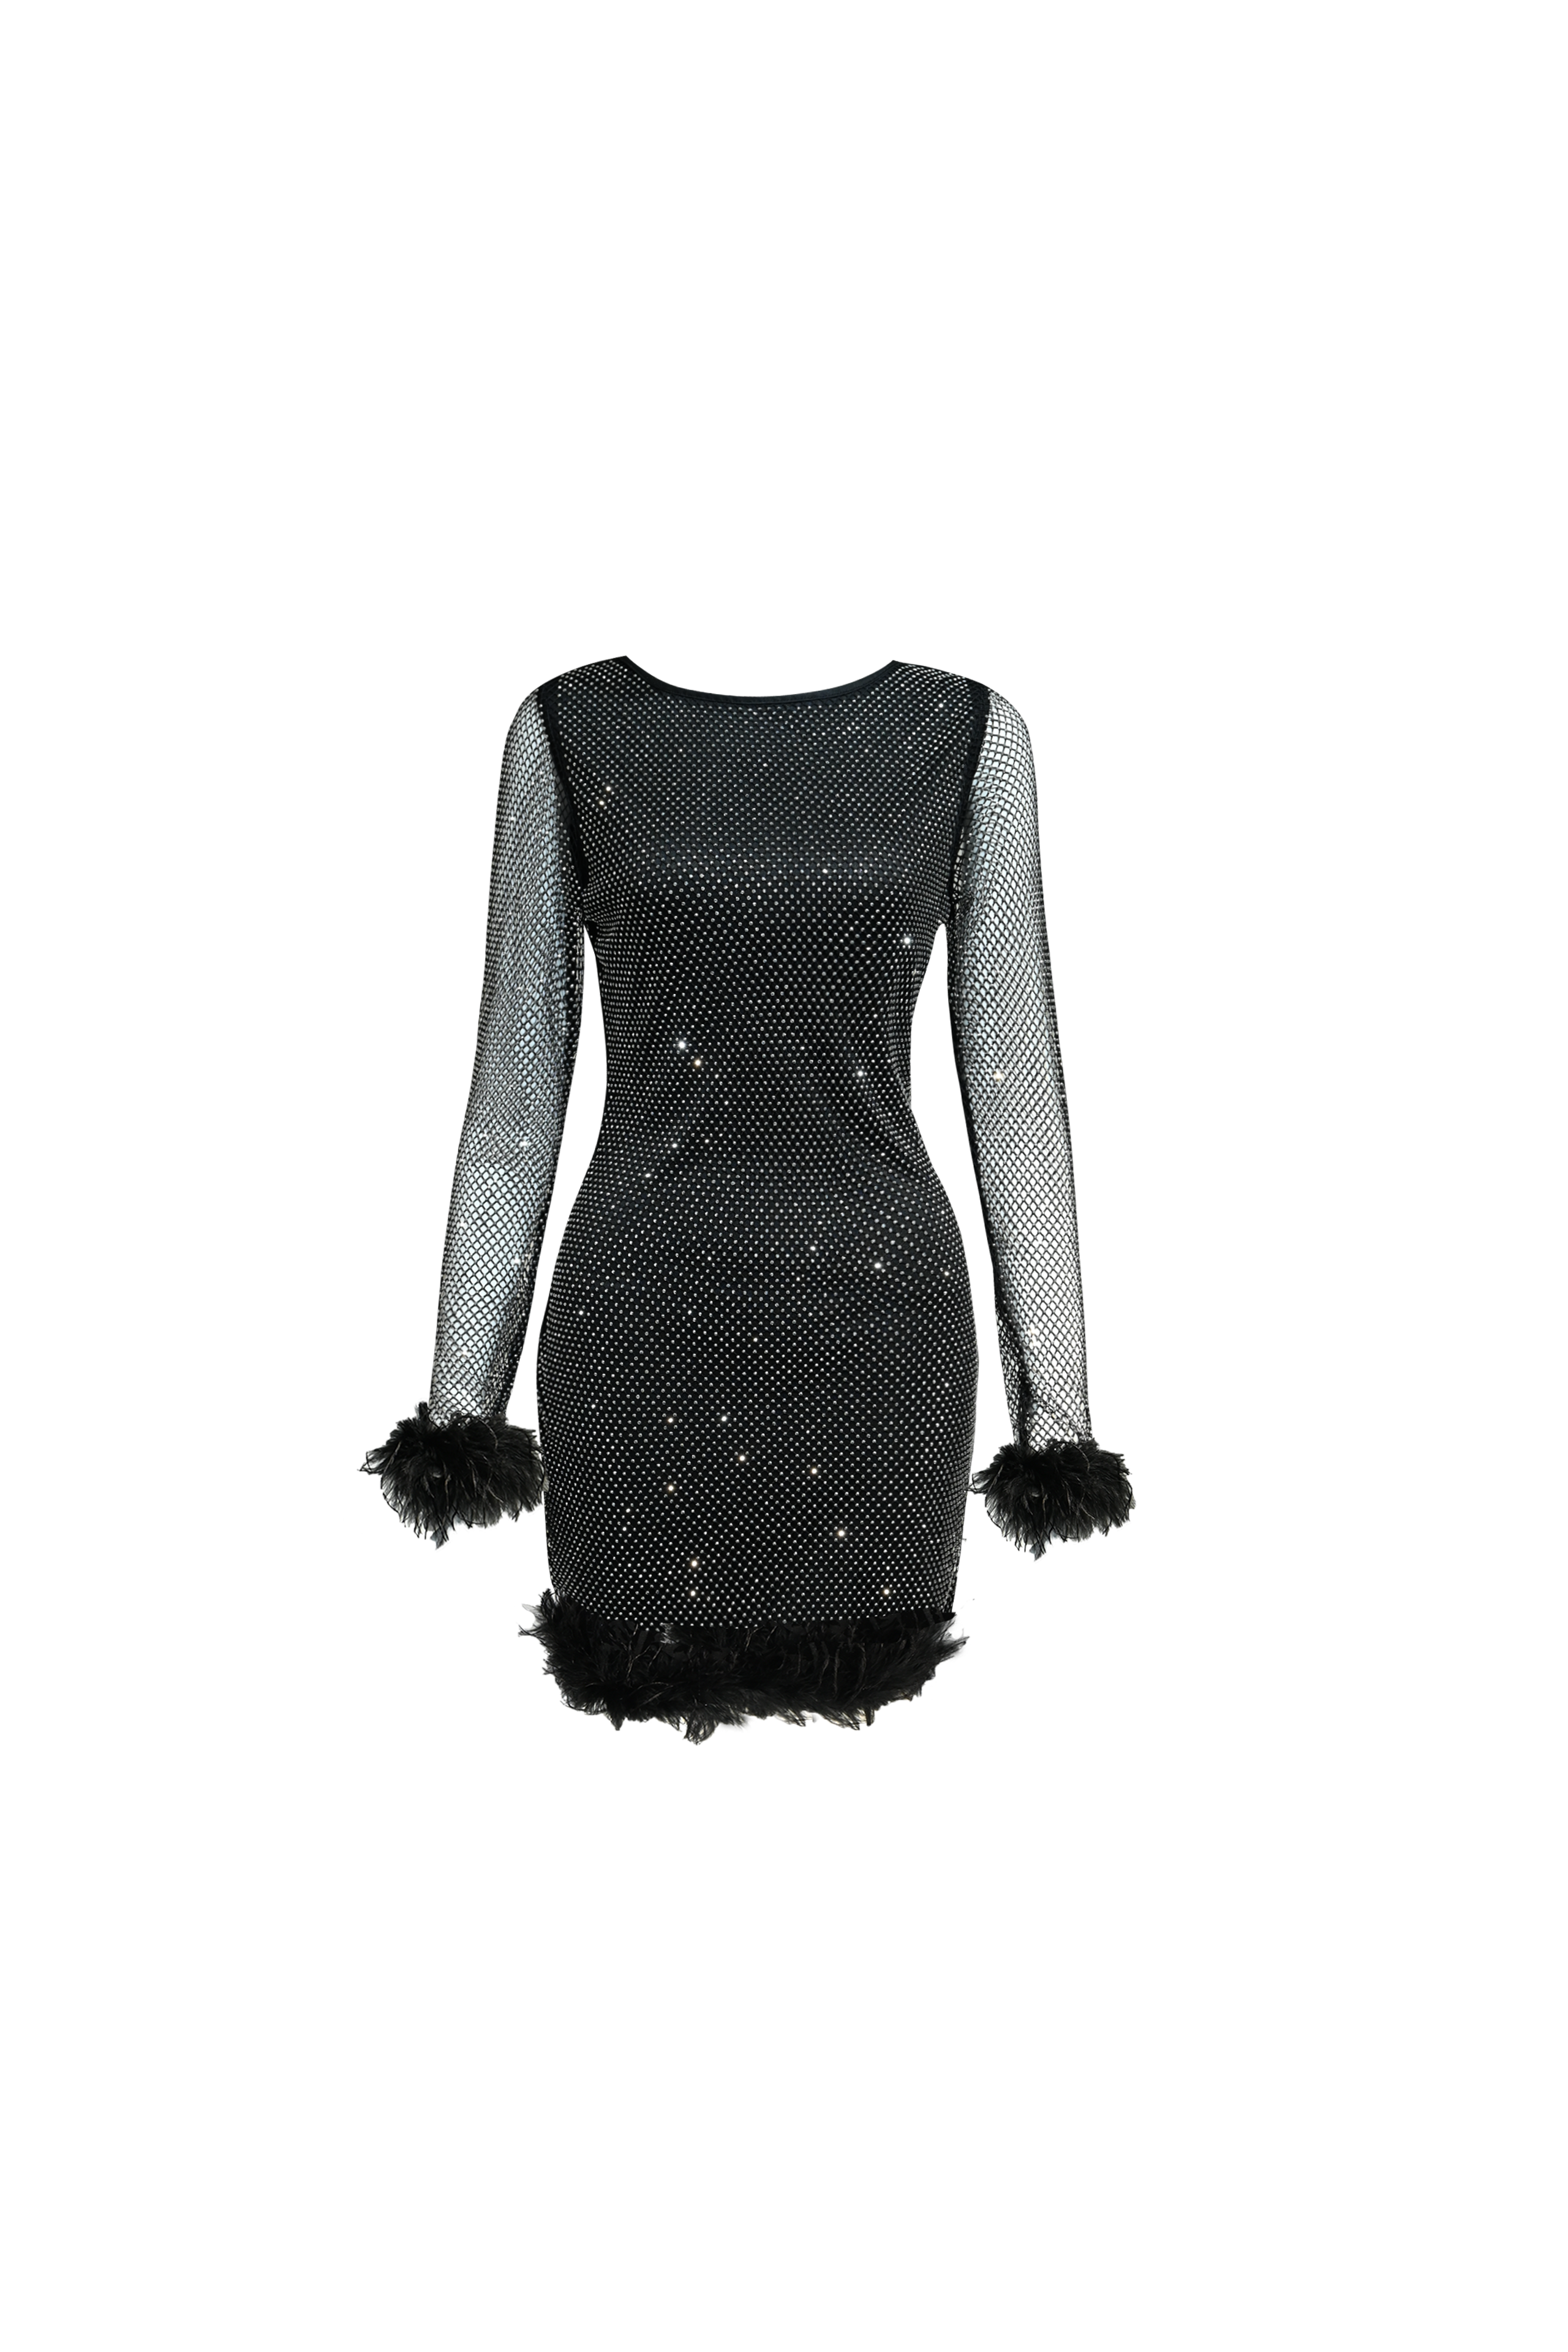 Aurelia Black Dress